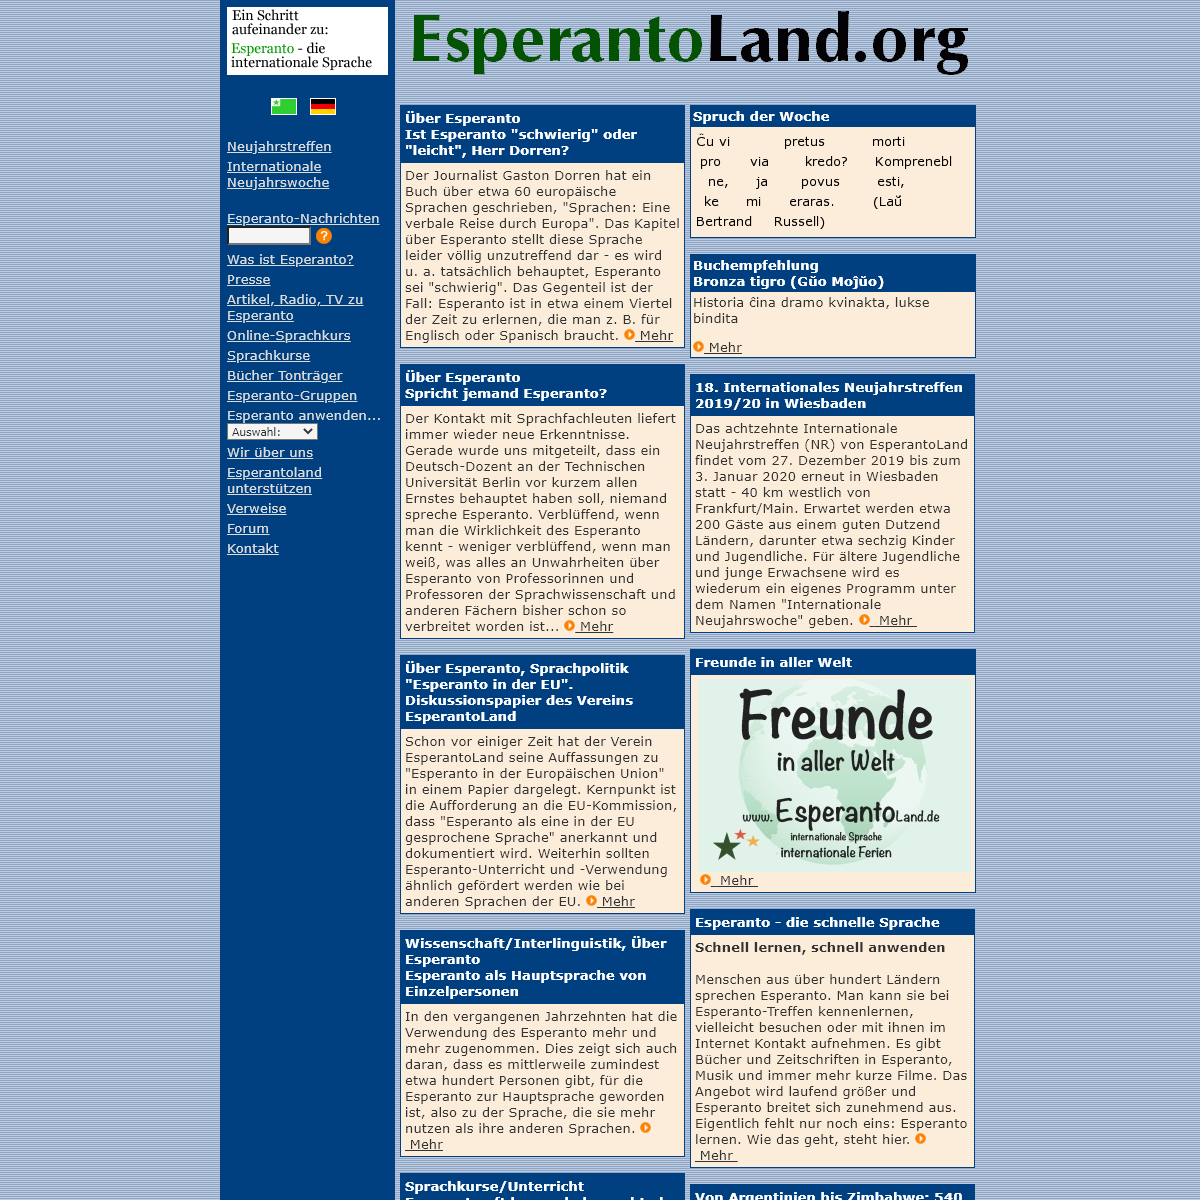 A complete backup of esperantoland.org